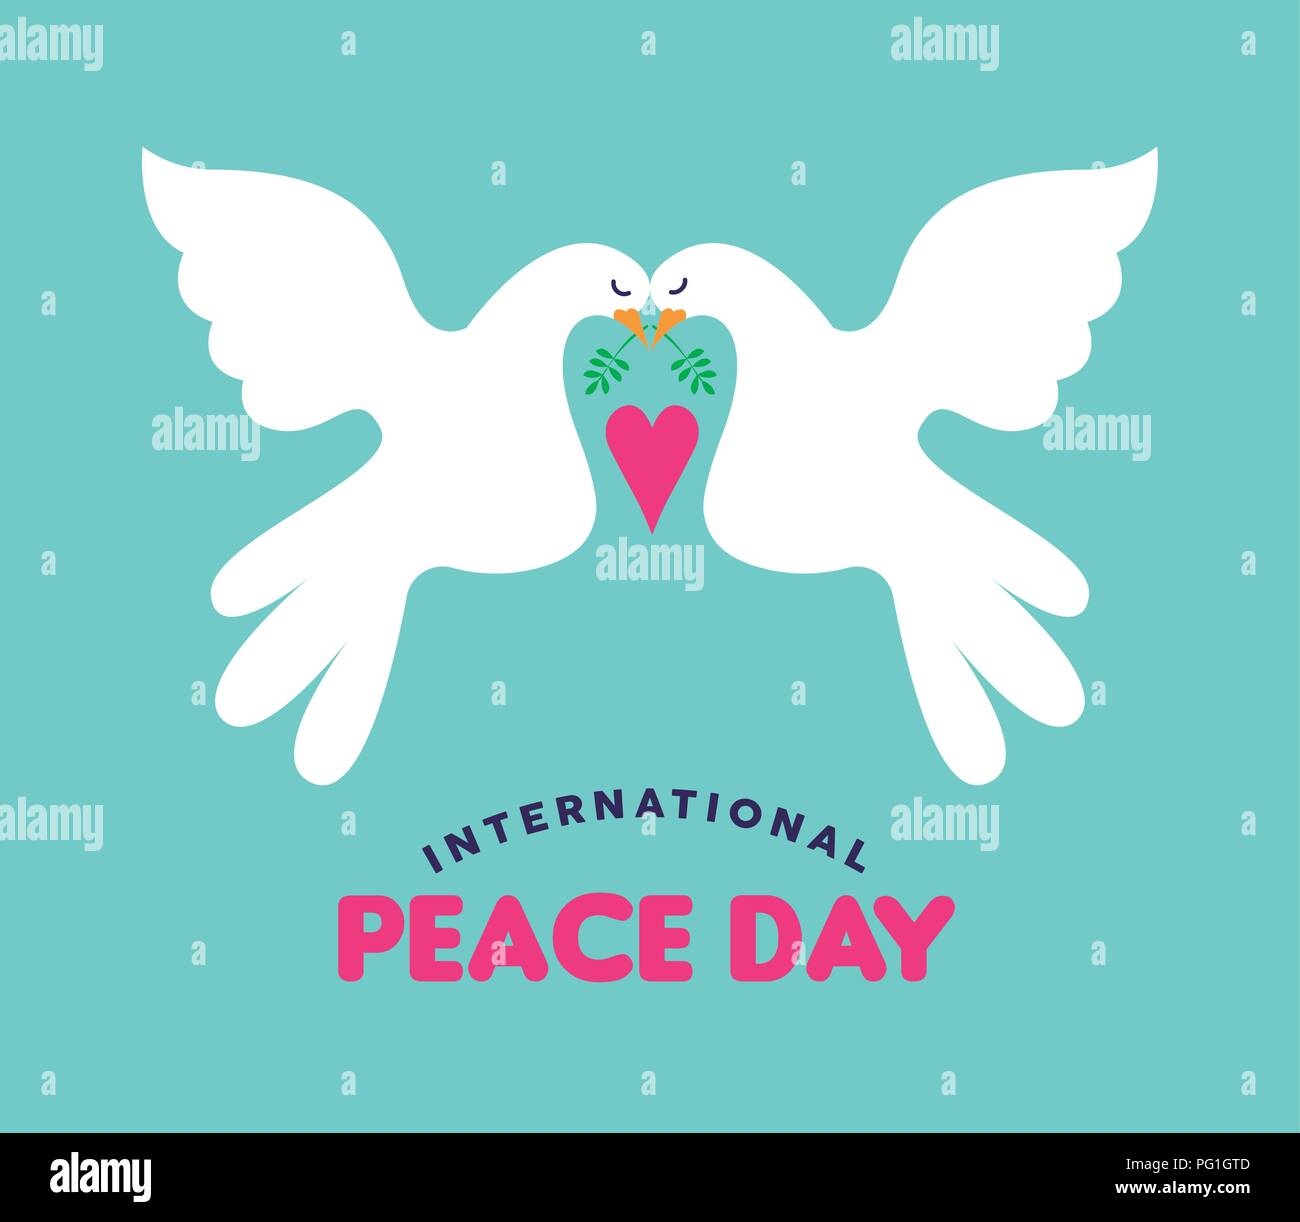 La Journée internationale de la paix illustration de deux colombes blanches tomber en amour. Le style dessiné à la main concept design carte de souhaits pour l'événement mondial ce paisible Illustration de Vecteur